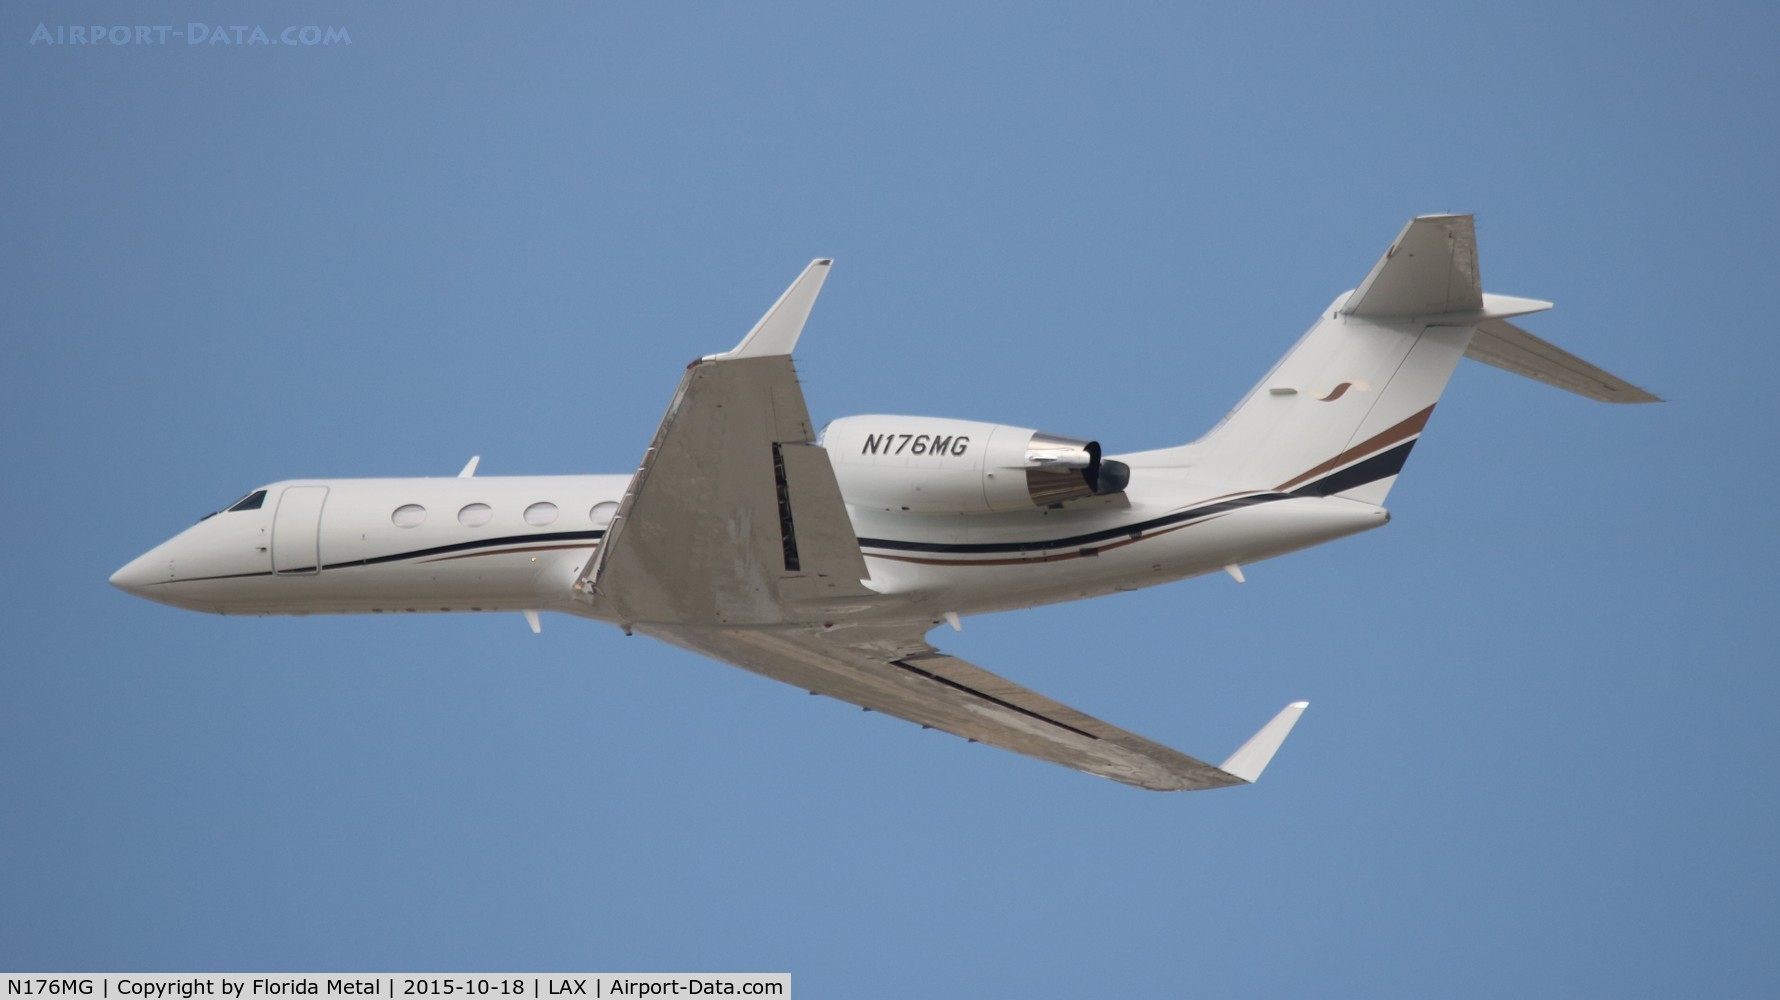 N176MG, 2002 Gulfstream Aerospace G-IV (G400) C/N 1501, Gulfstream 400